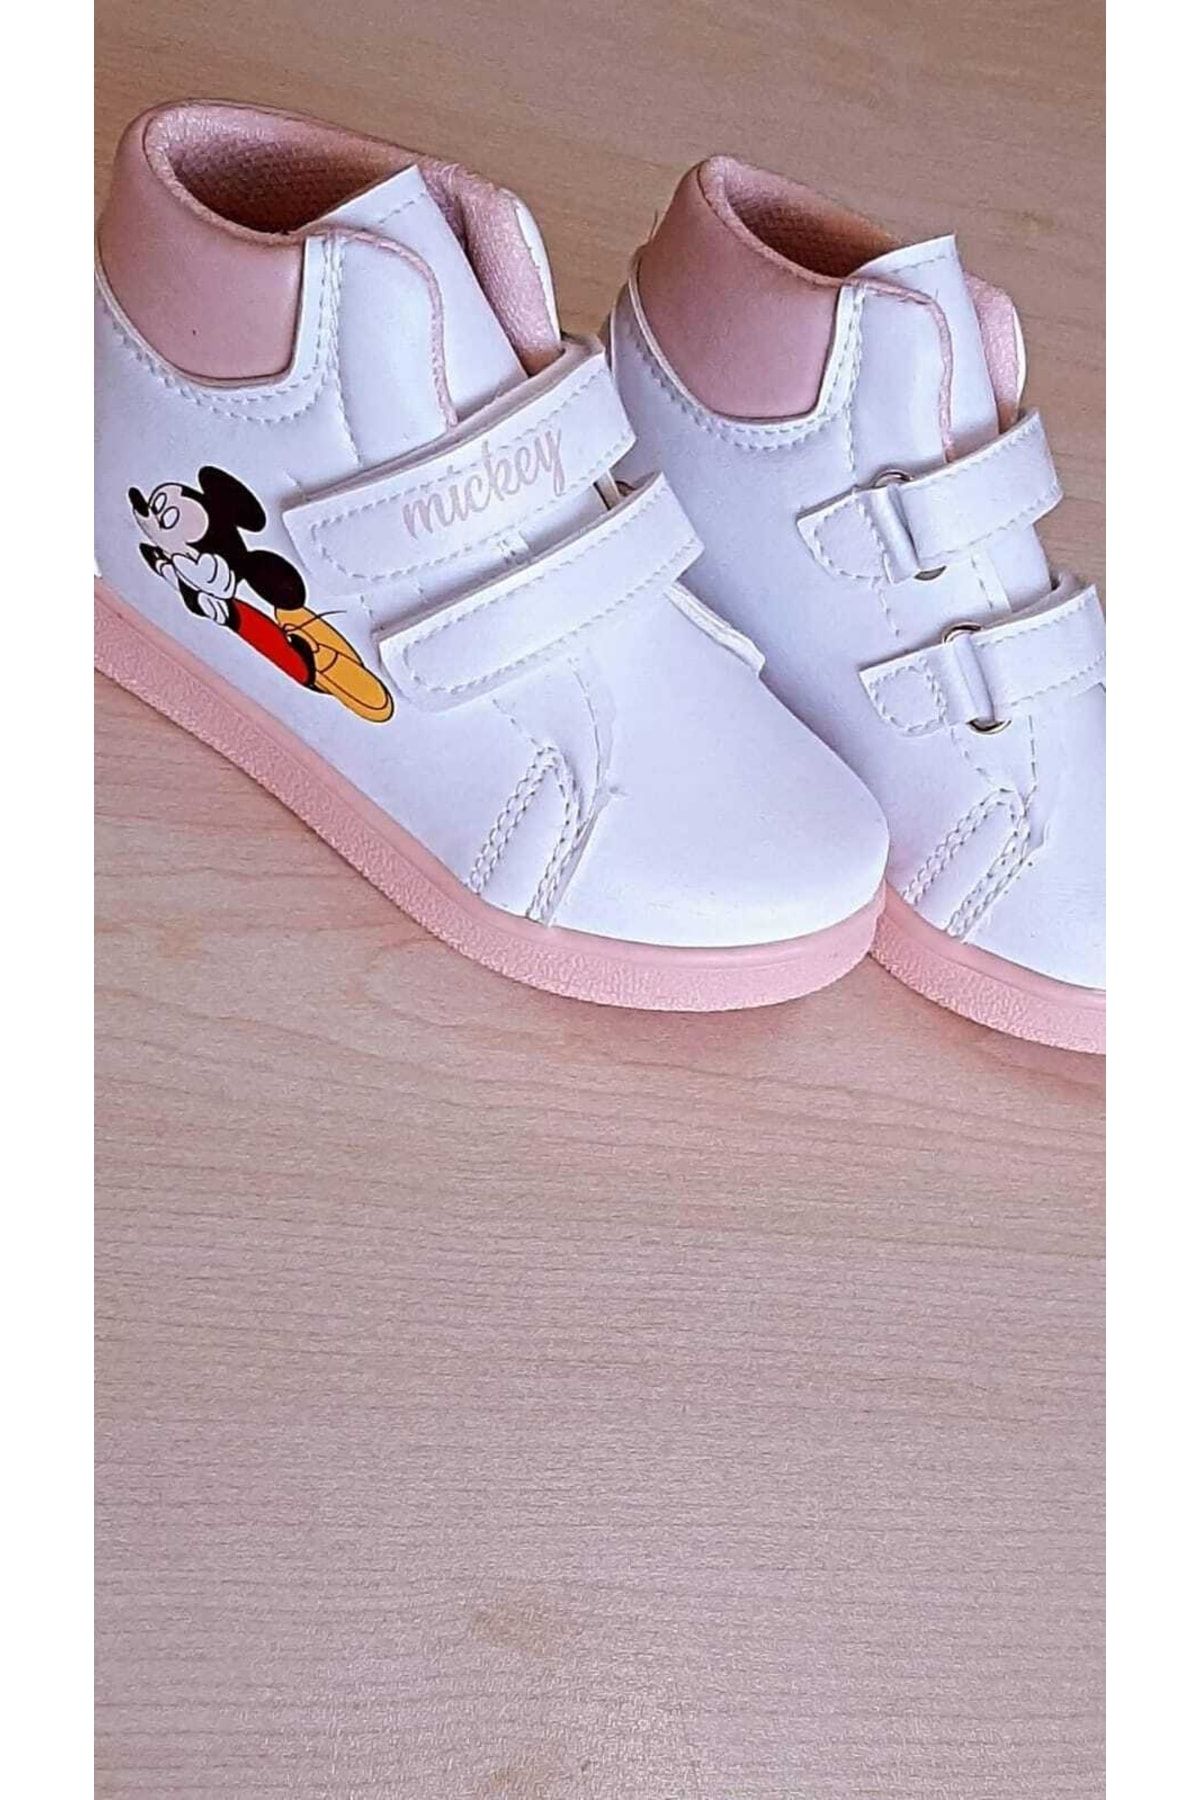 MICKEY Çocuk Miki Pembe Beyaz Bot Ayakkabı